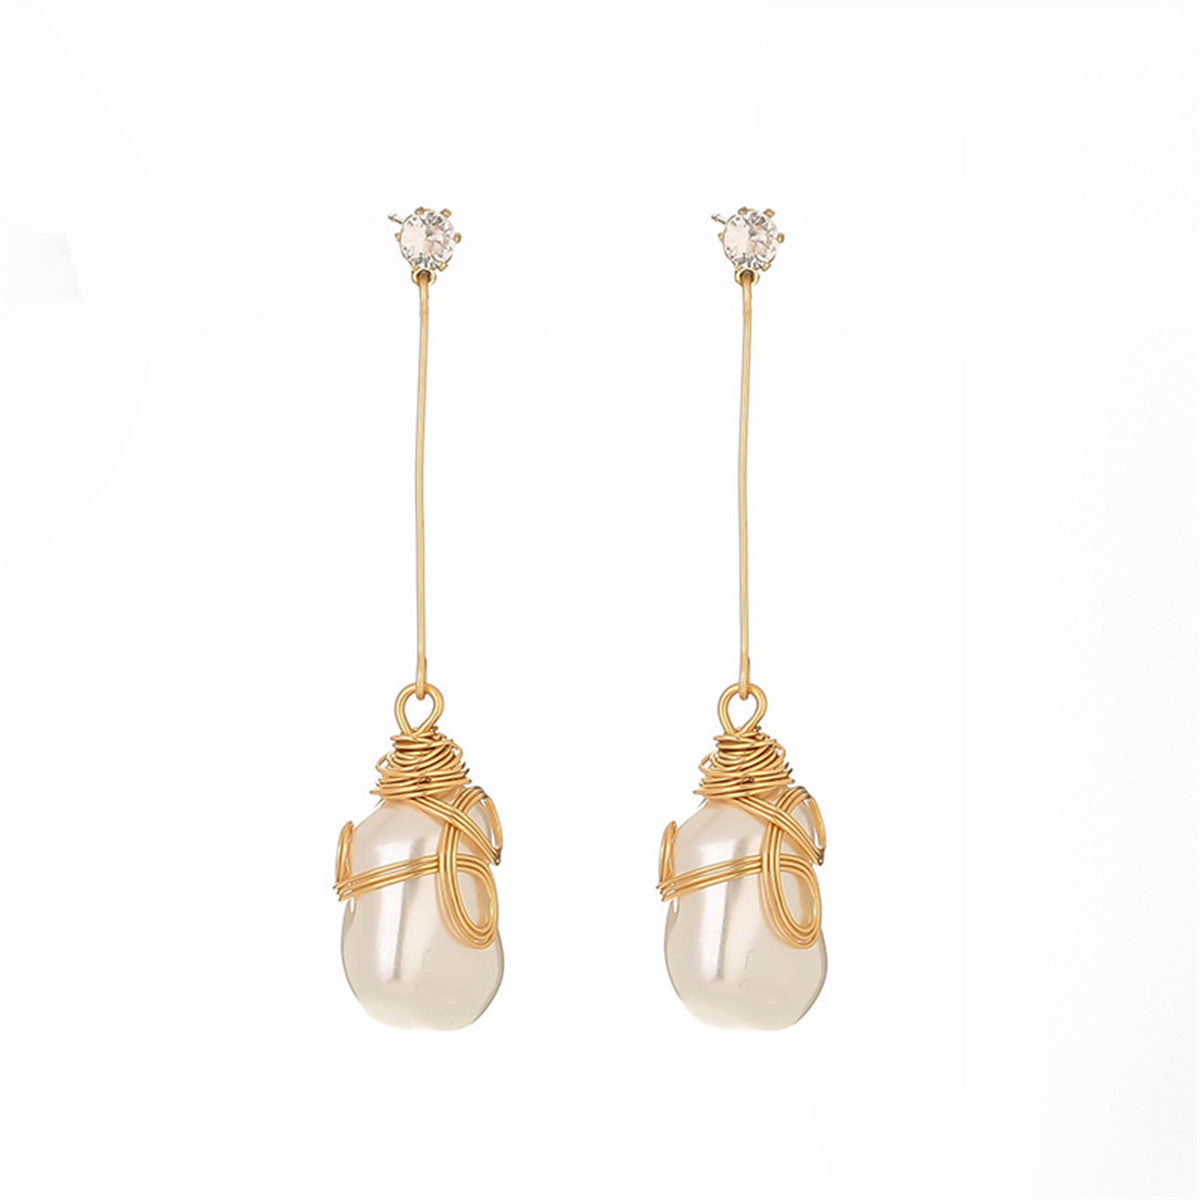 Pearl & Cubic Zirconia 18K Gold-Plated Teardrop Earrings